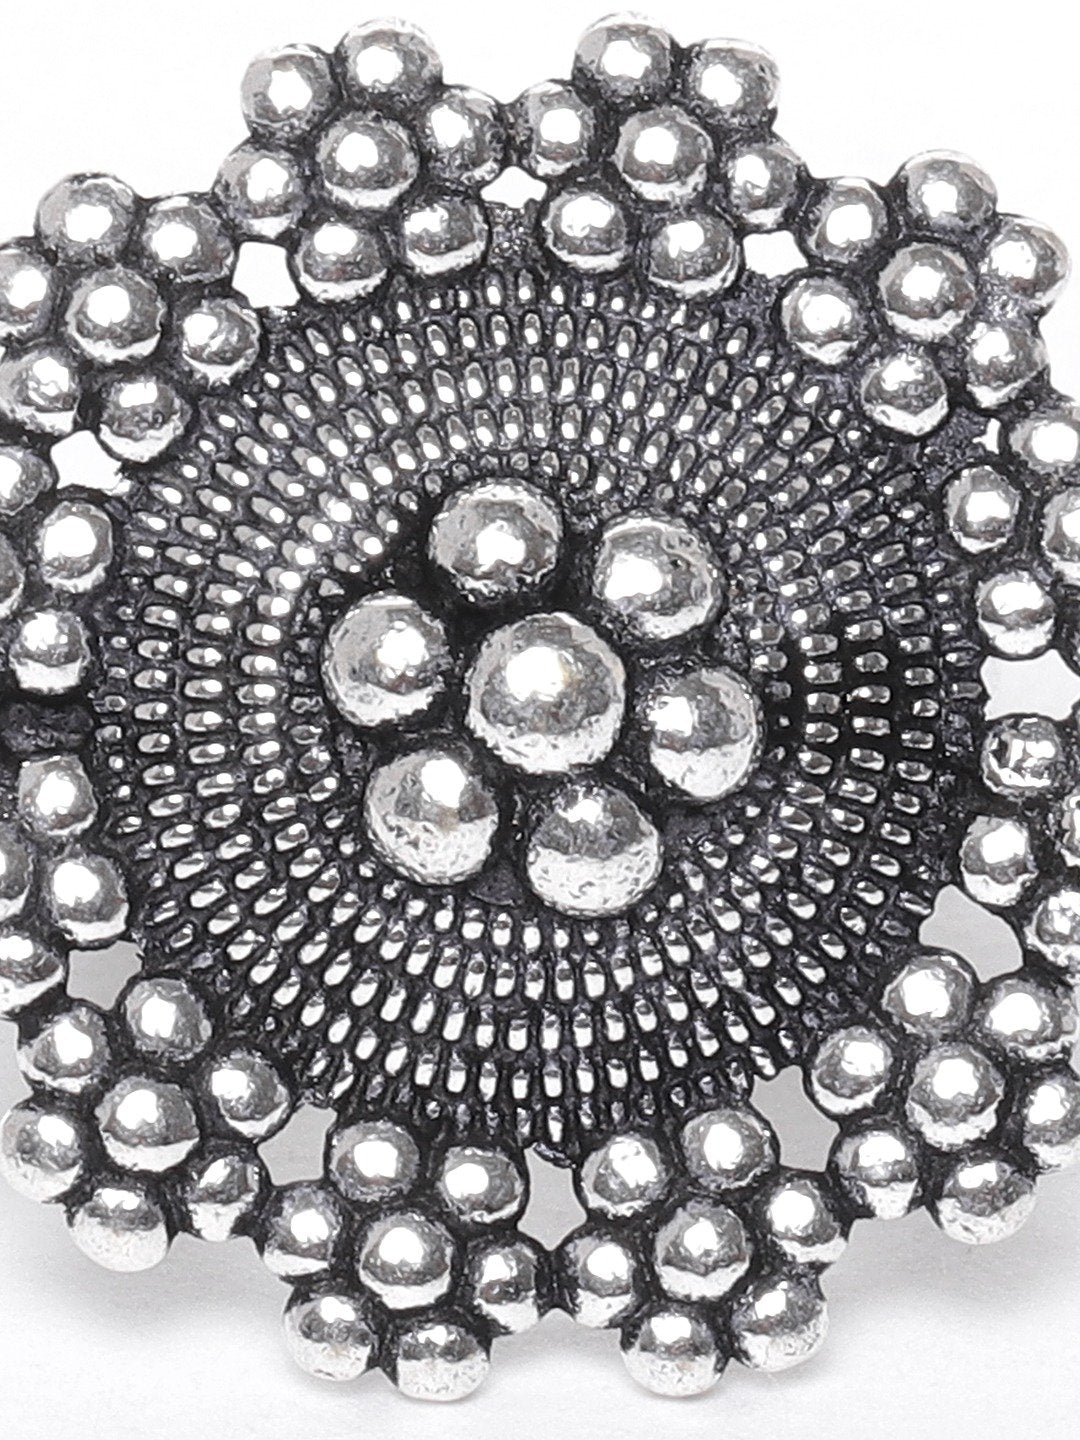 Women's German Silver Oxidised Ghungroo Jewellery Set With Ring & Nosepin - Priyaasi